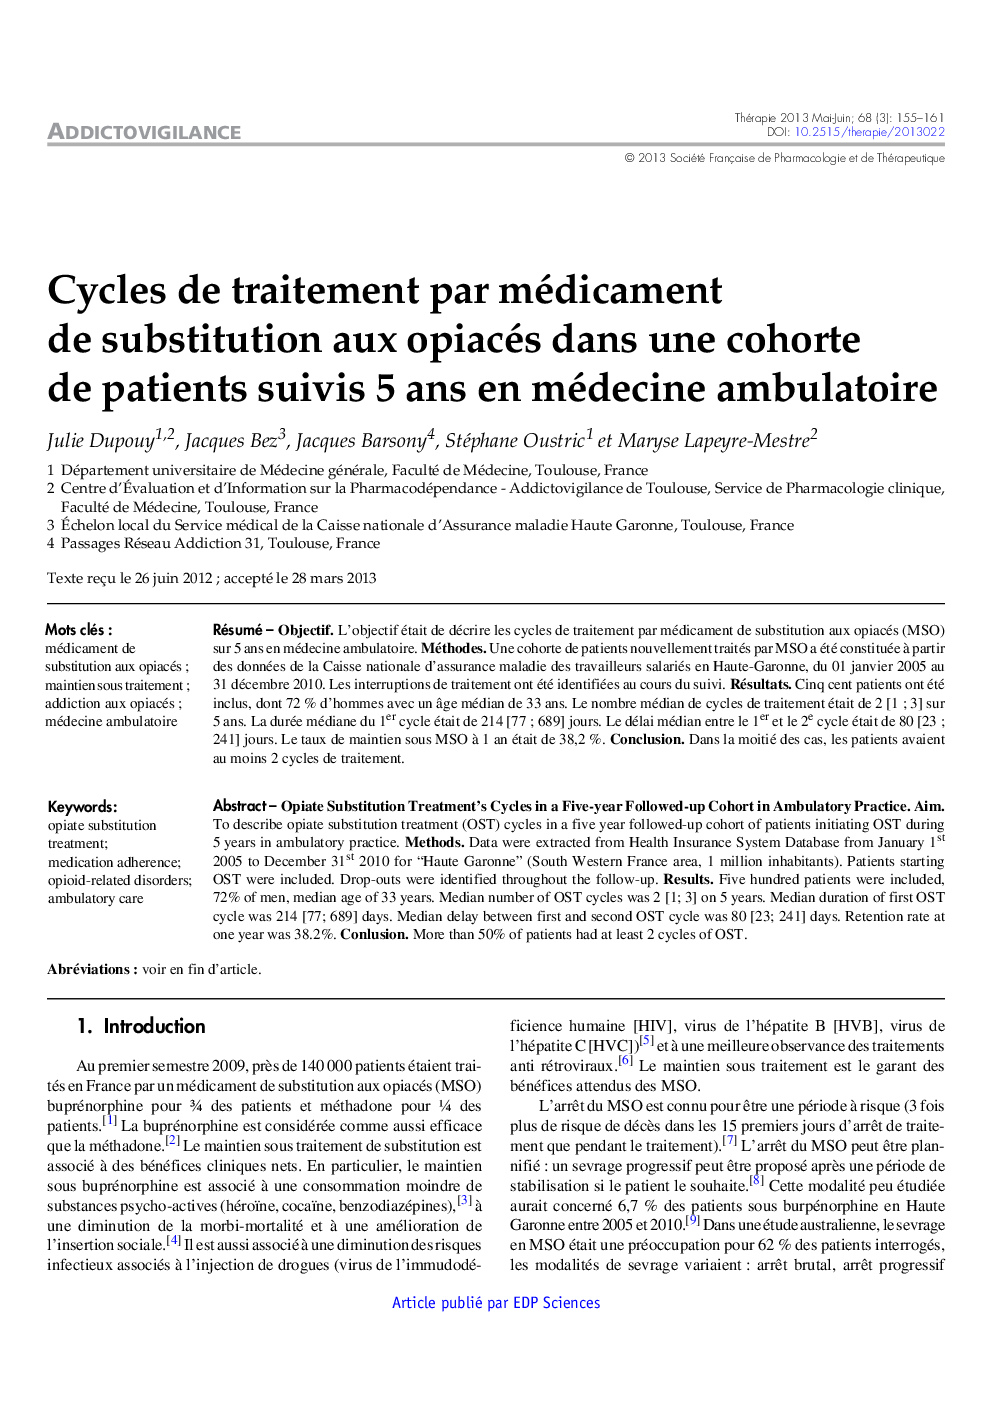 Cycles de traitement par médicament de substitution aux opiacés dans une cohorte de patients suivis 5 ans en médecine ambulatoire